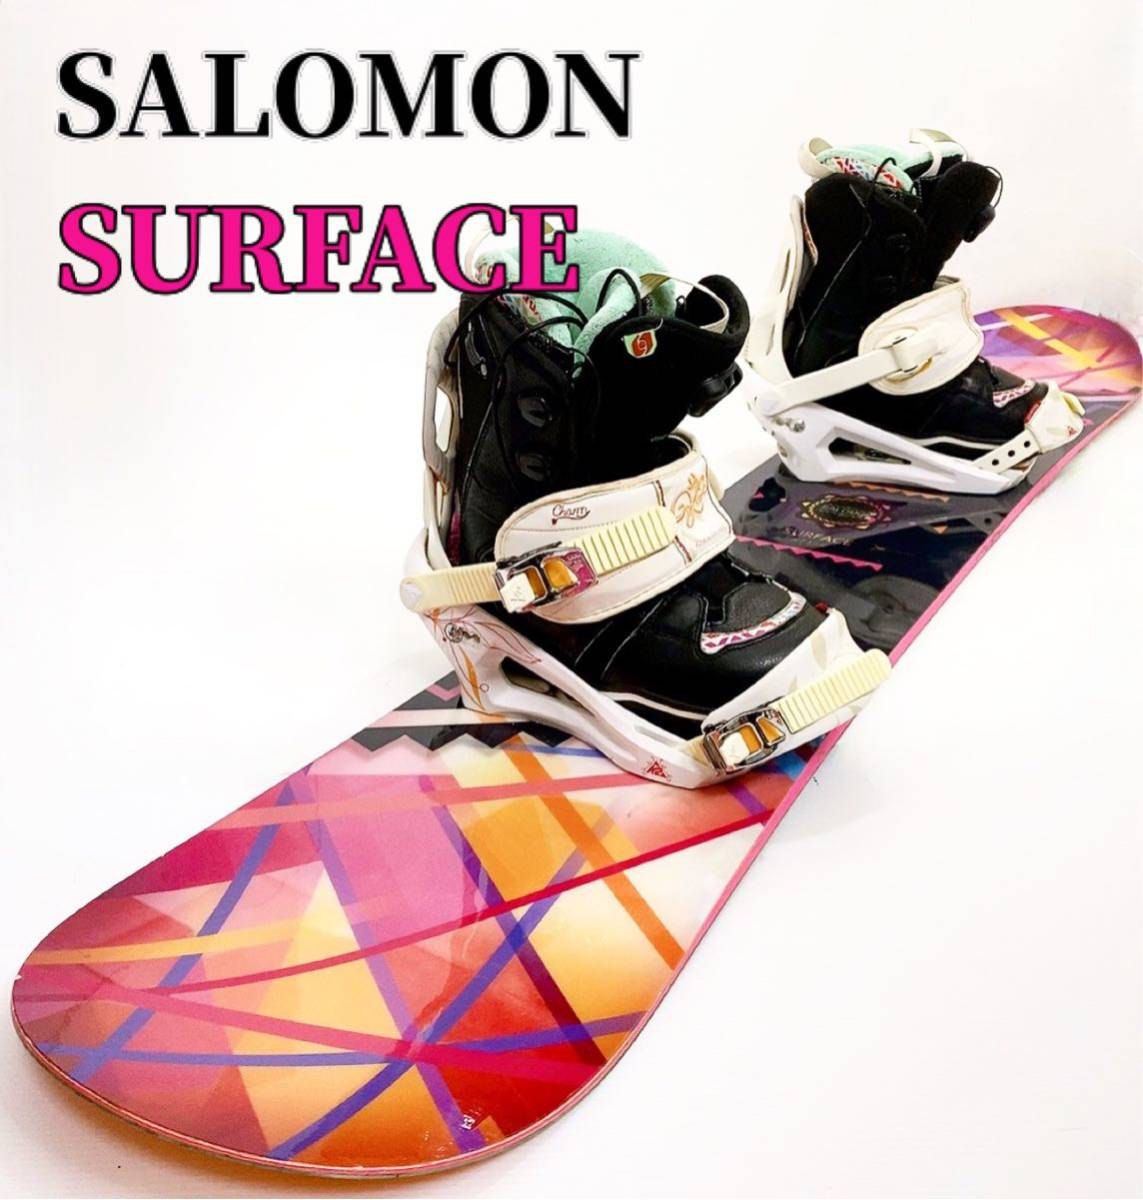 SALOMON SURFACE 146cm IVY スノーボード 3点セット レディース